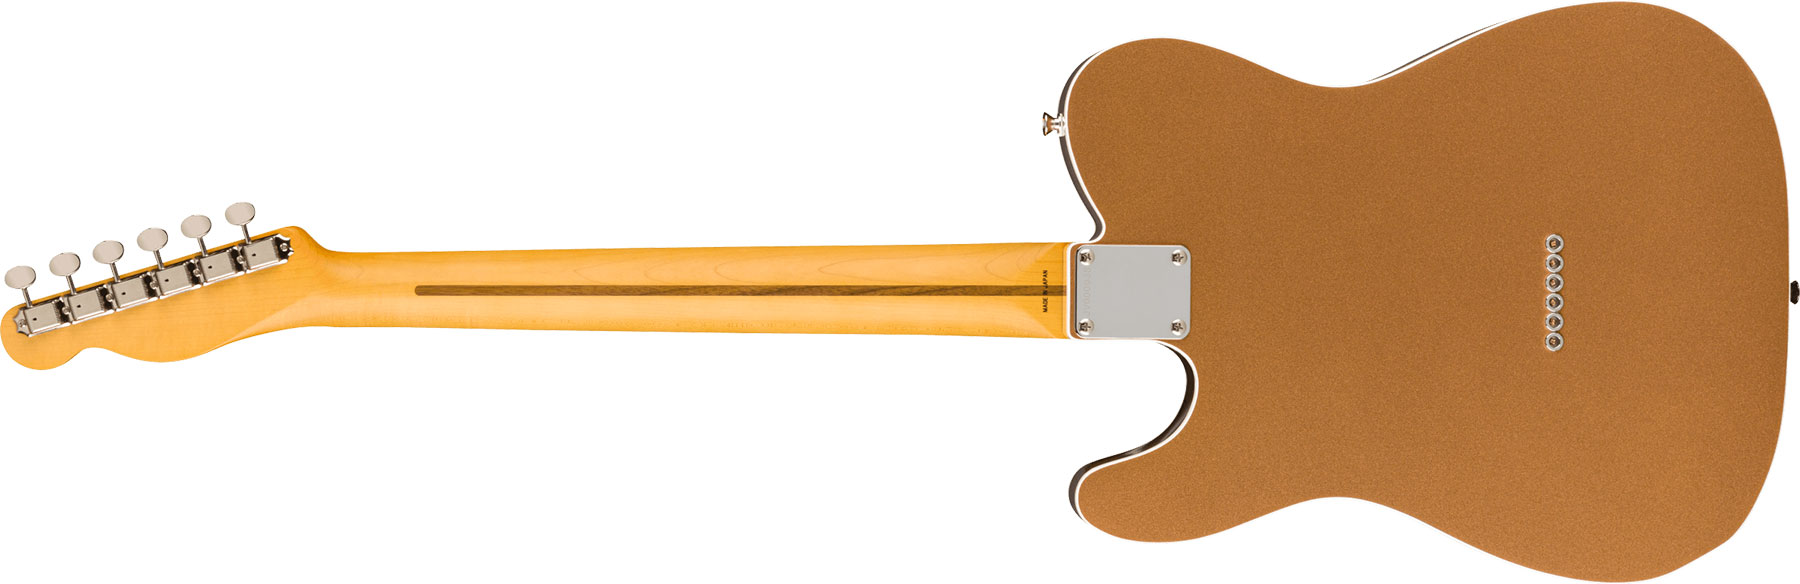 Fender Tele Custom '60s Jv Modified Jap 2s Ht Rw - Firemist Gold - E-Gitarre in Teleform - Variation 1